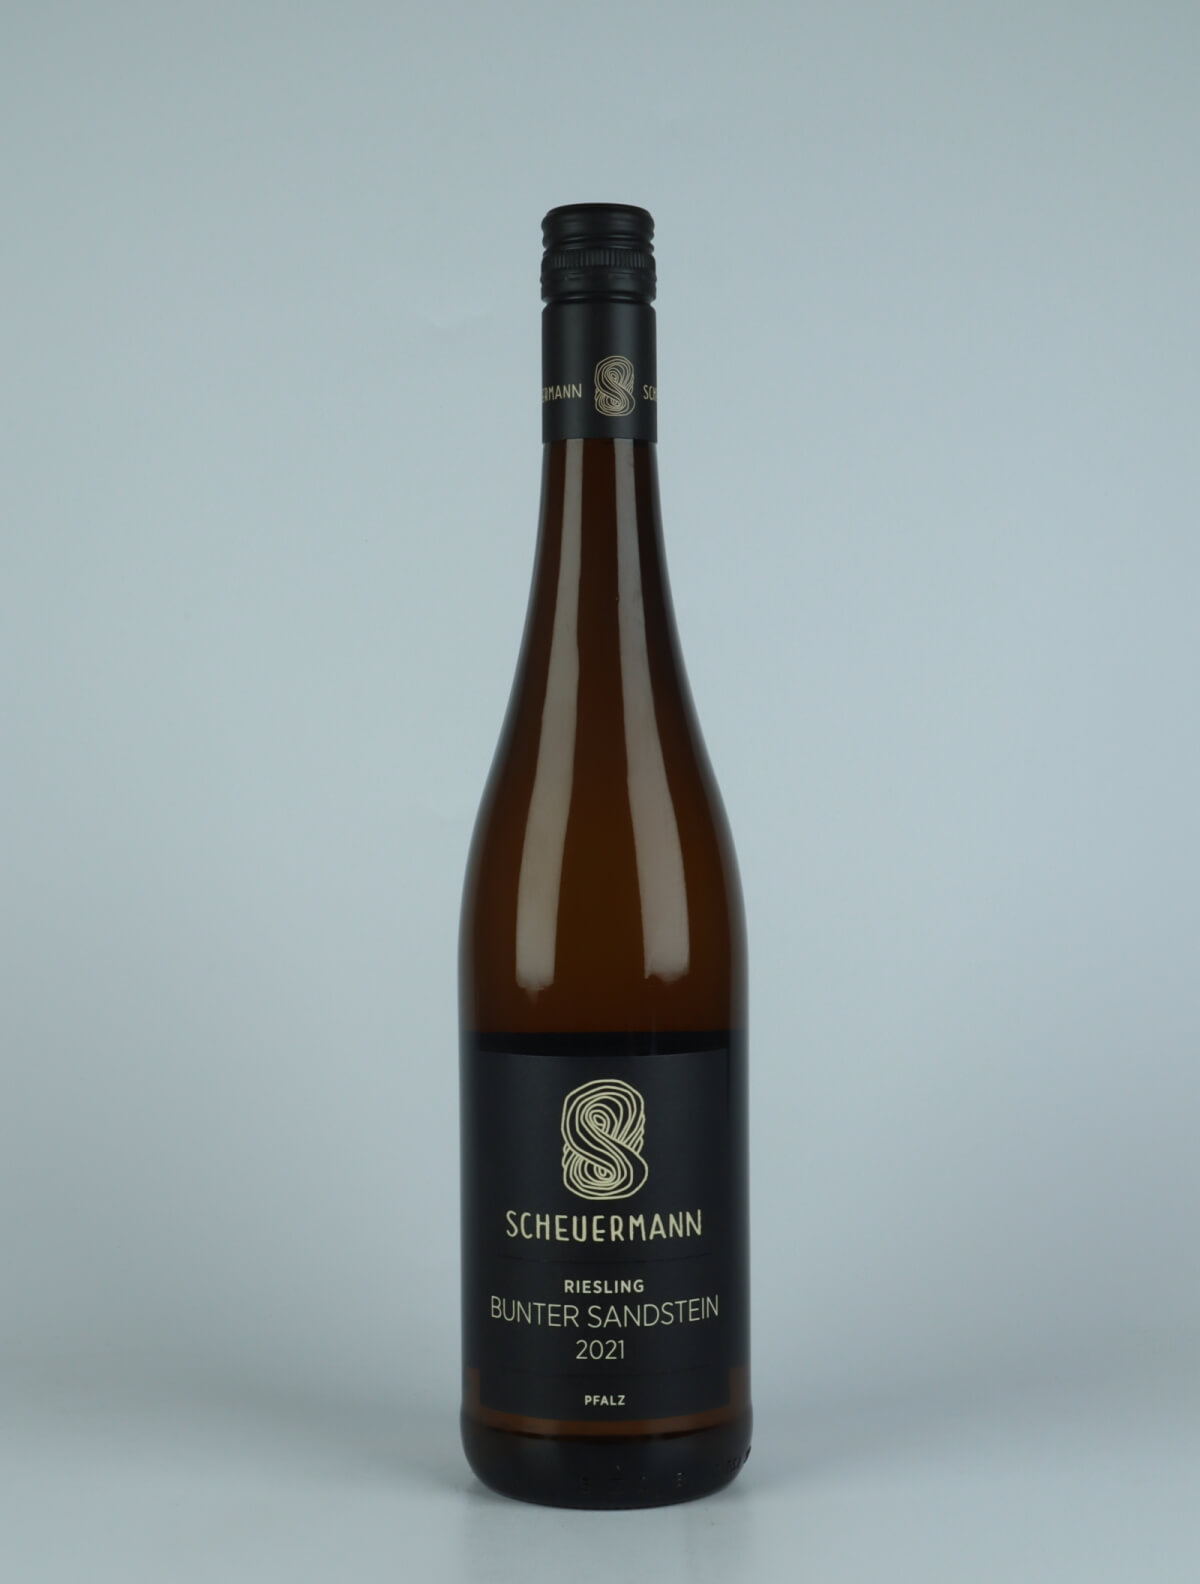 A bottle 2021 Riesling Bunter Sandstein White wine from Weingut Scheuermann, Pfalz in Germany